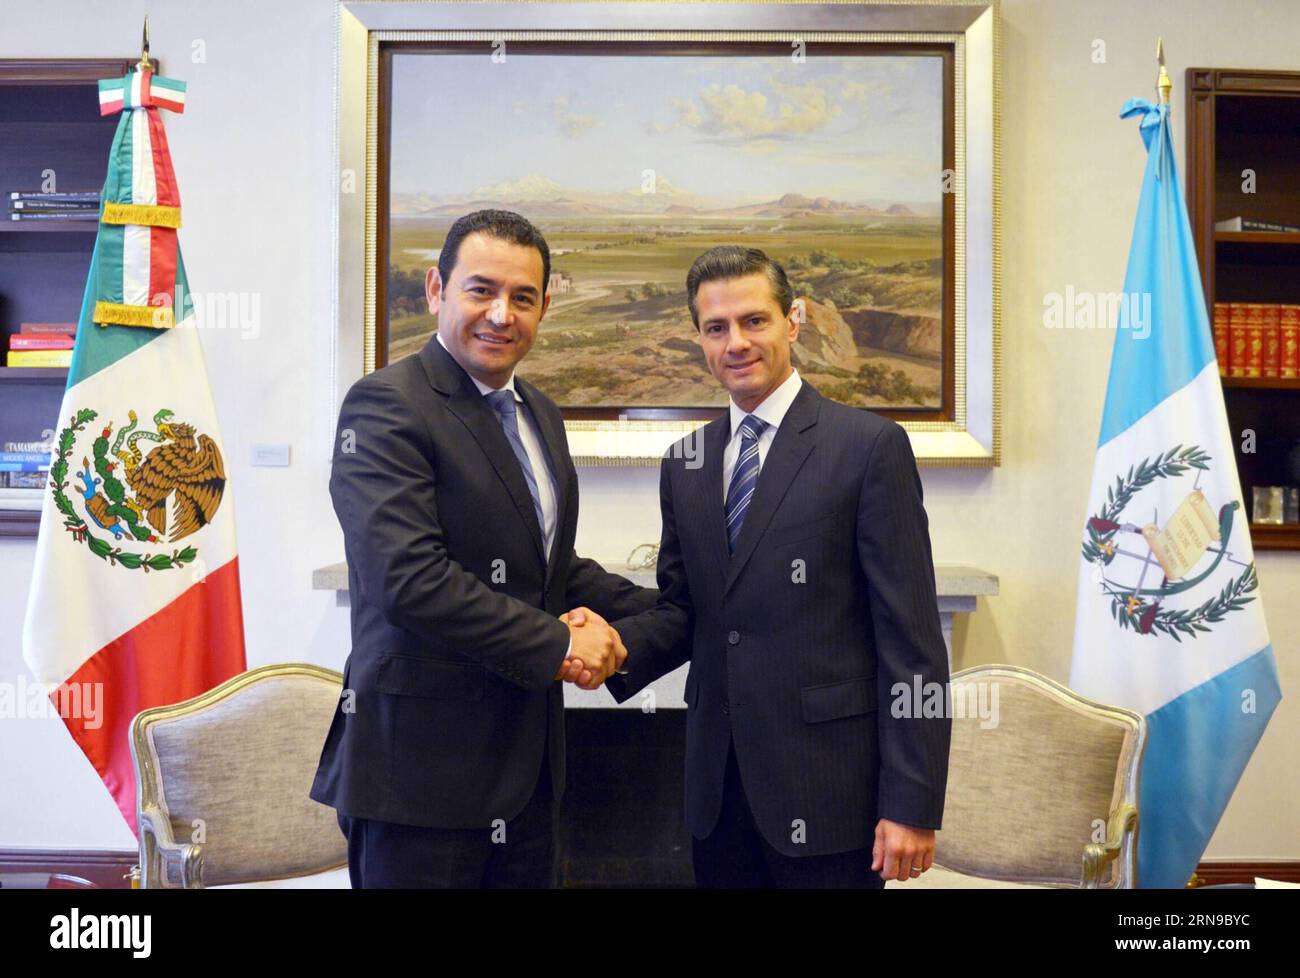 (151128) -- MEXICO, 28 novembre 2015 -- image fournie par le président mexicain Enrique Pena Nieto (à droite) serrant la main du président élu du Guatemala Jimmy Morales (à gauche) lors de leur rencontre à la résidence officielle Los Pinos, à Mexico, capitale du Mexique, le 27 novembre 2015. Le président élu du Guatemala, Jimmy Morales, a entamé vendredi une visite officielle au Mexique dans le but de renforcer les relations bilatérales. (Da) (sp) MEXICO-MEXICO CITY-GUATEMALA-POLITICS-VISIT MEXICO SxPRESIDENCY PUBLICATIONxNOTxINxCHN 151128 Mexico City nov. 28 2015 image fournie par shows MEXICAN President Banque D'Images